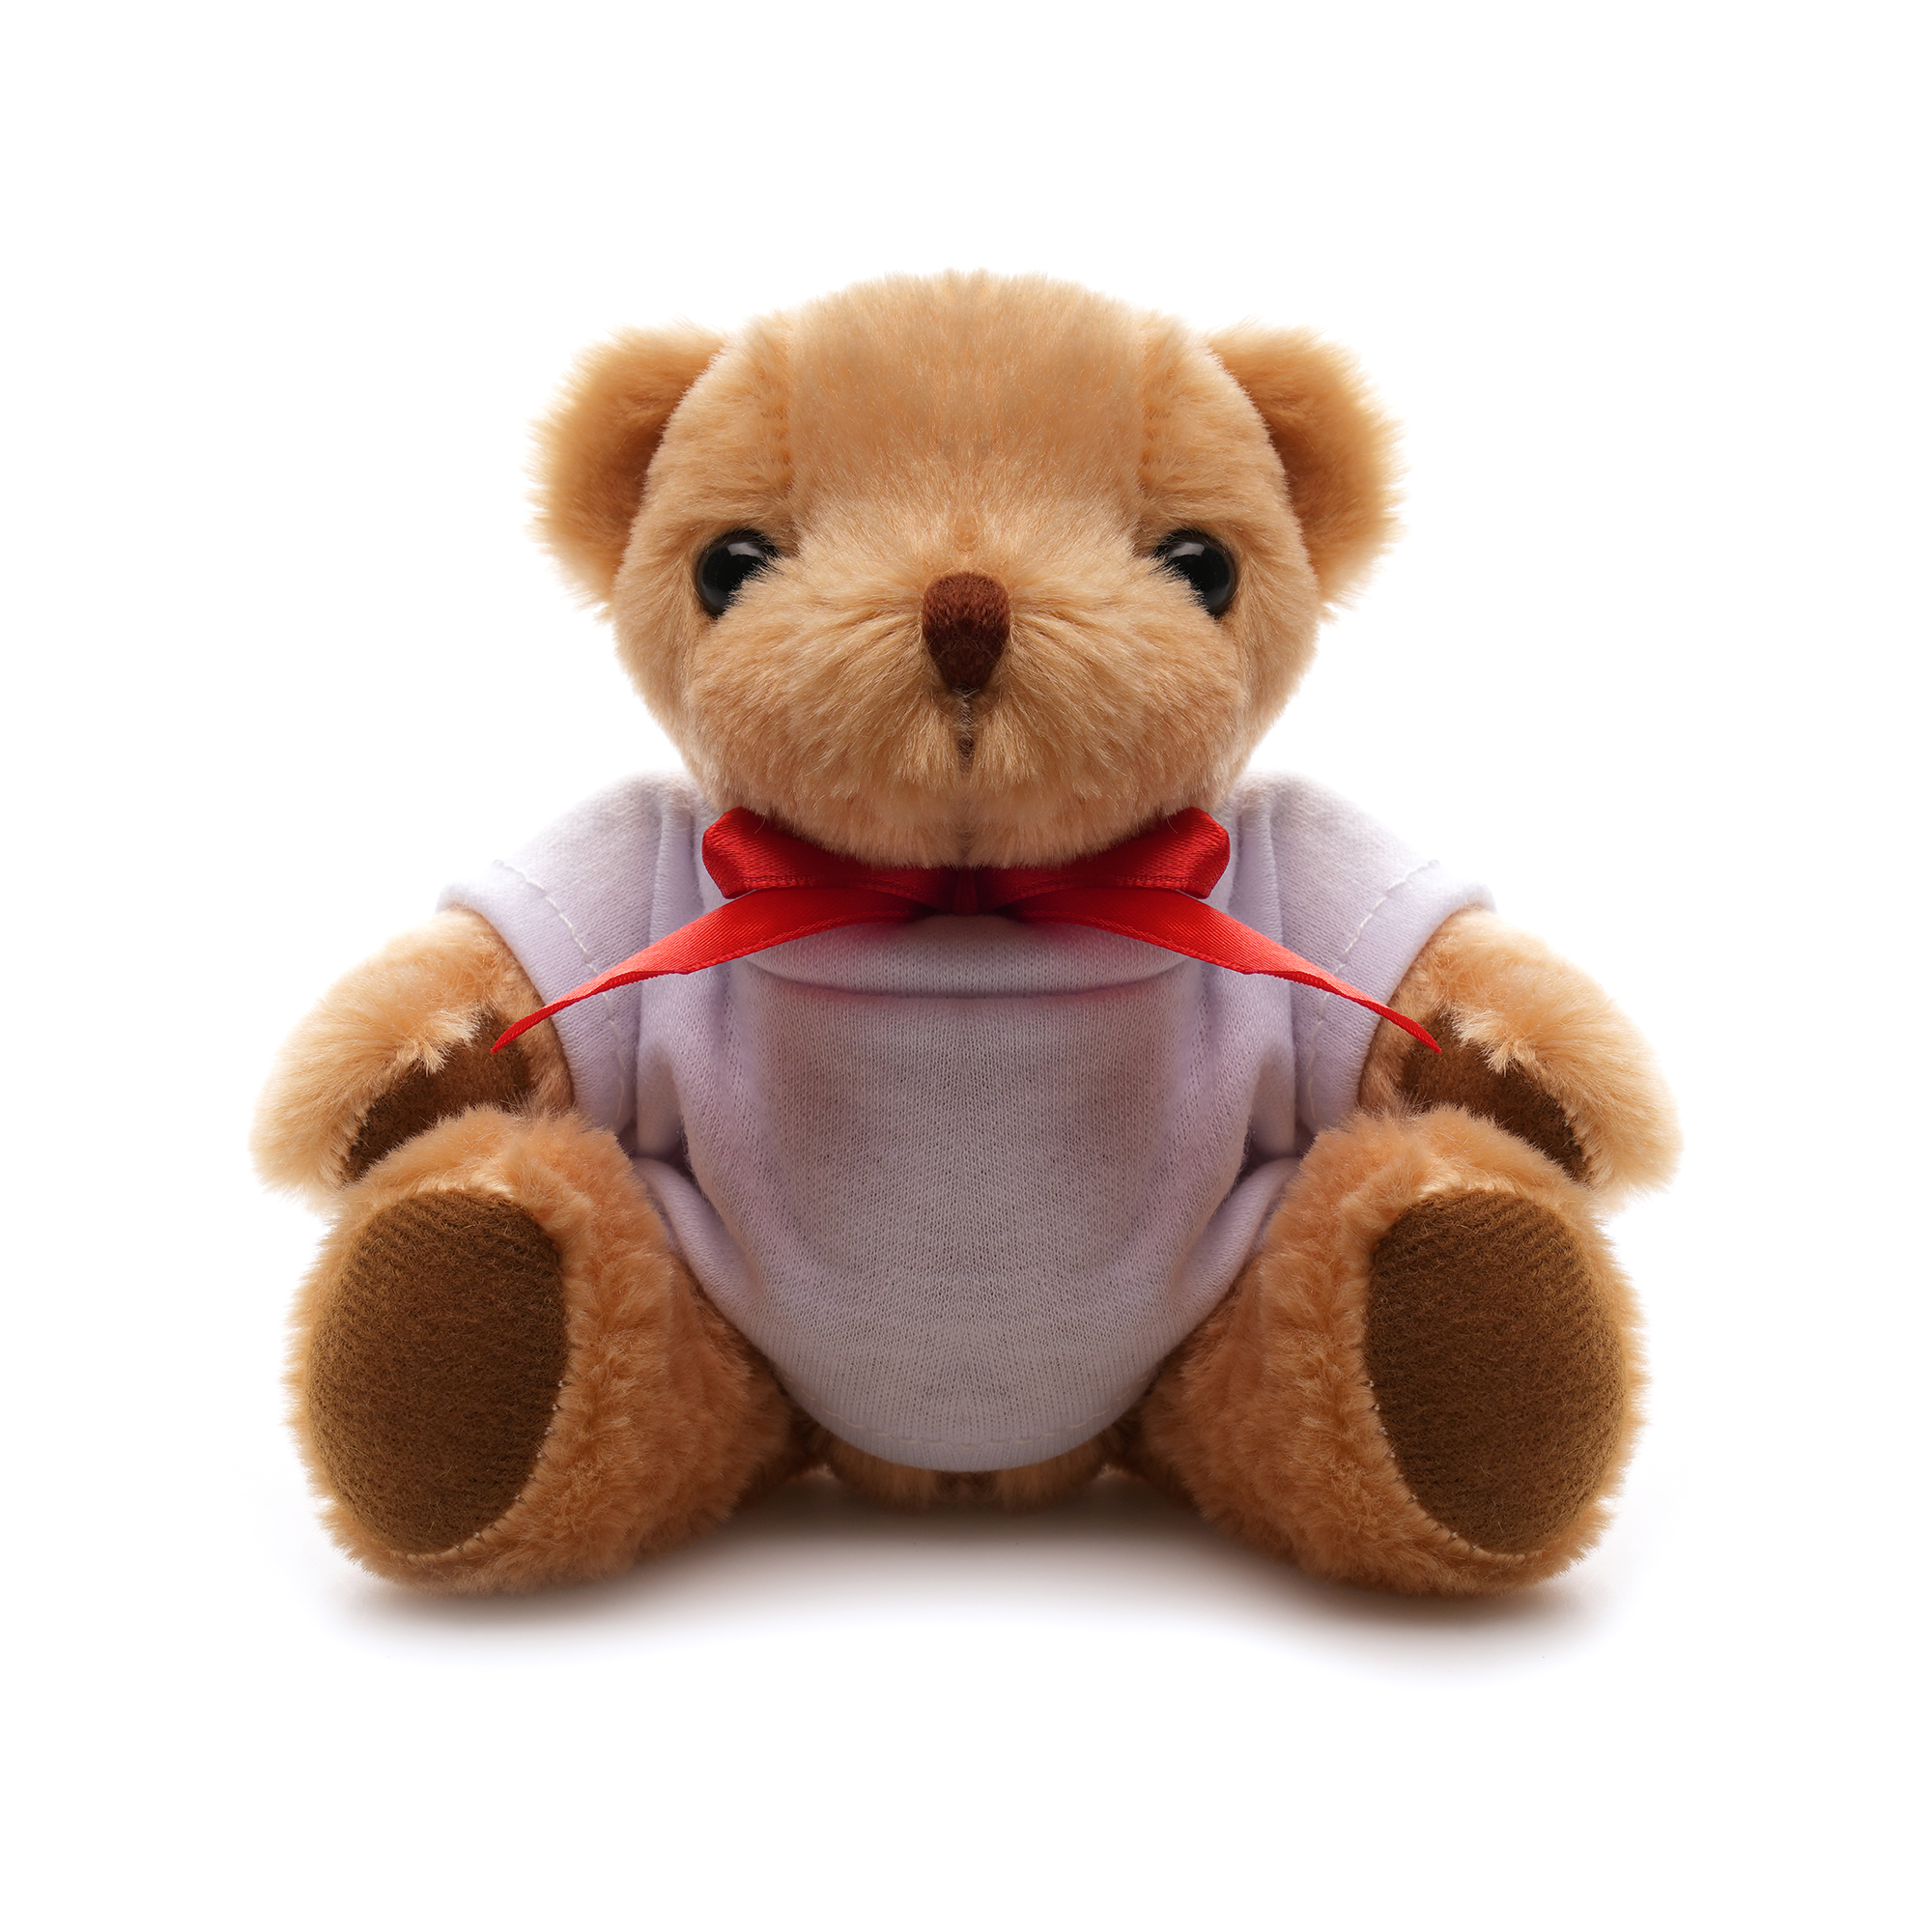 TB0005 2 - Fuzzy 20cm Teddy Bear